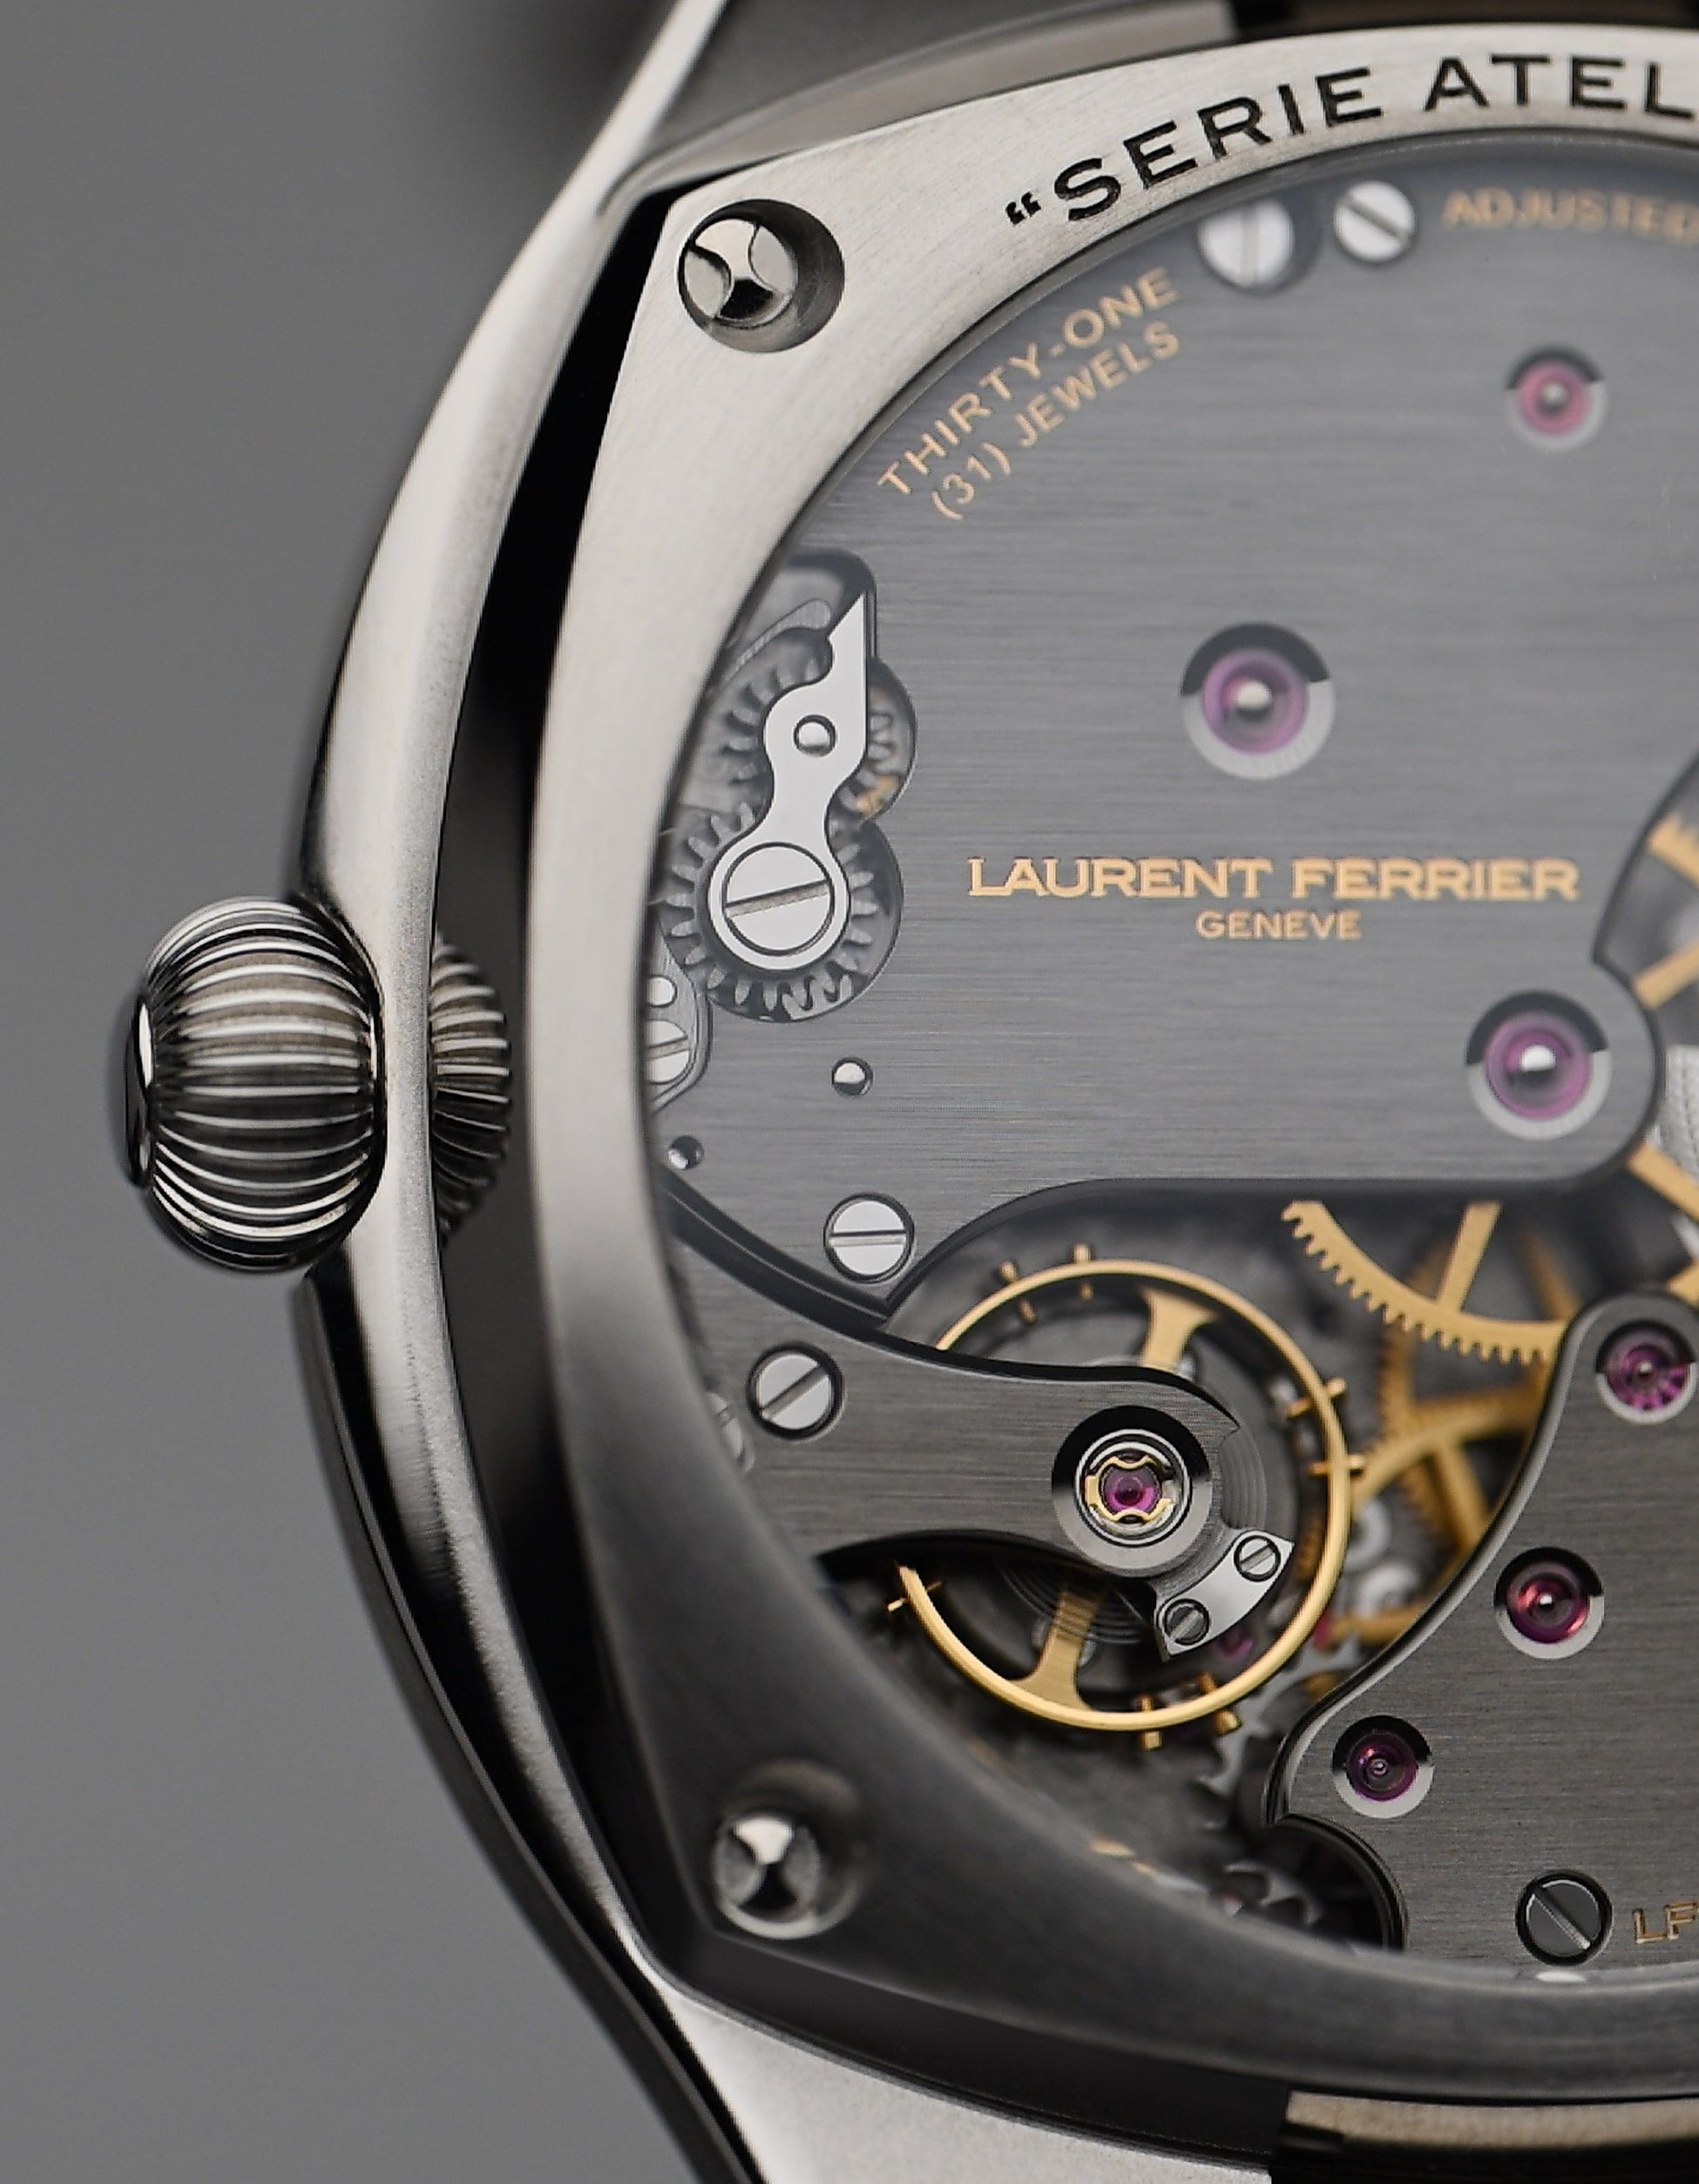 Each element on the Laurent Ferrier Sport Auto 40 gets a haute horlogerie finish execution